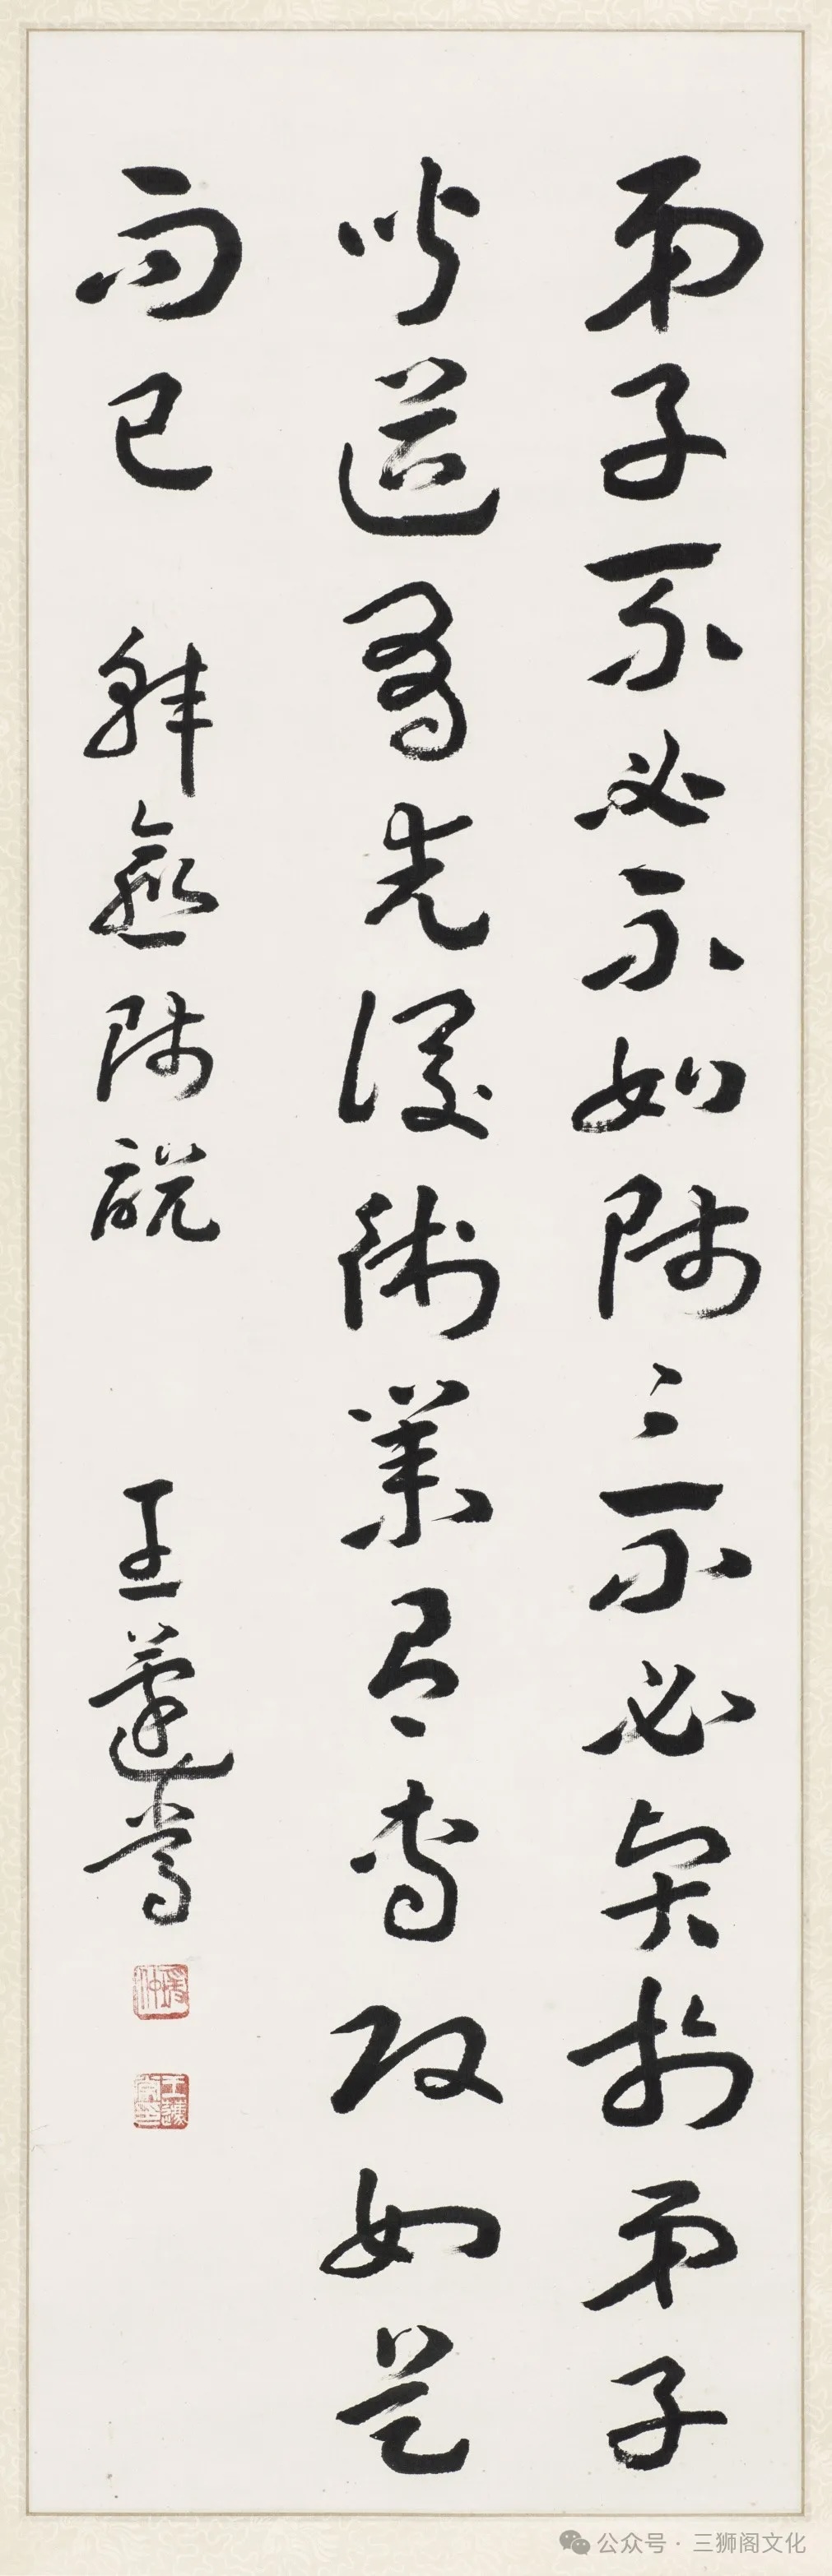 王蘧常，《节录韩愈师说》 纸本，立轴 128.5cm×40.0cm